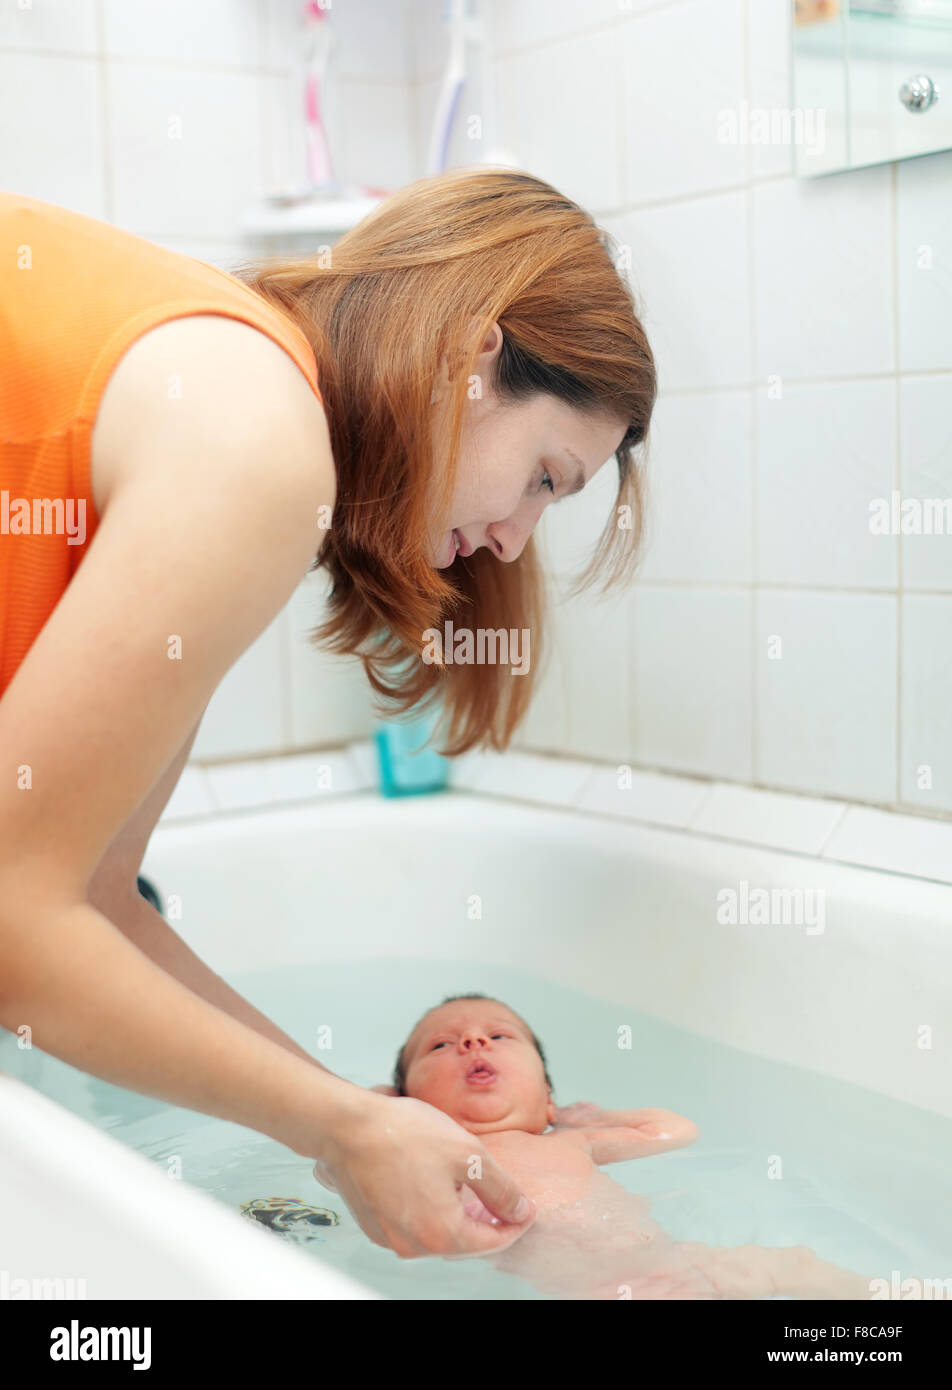 Сын увидел мама ванны. Мама в ванной. Купание мамы с малышом в ванной. Мама купается в ванной. Мама купается с детьми в ванной.